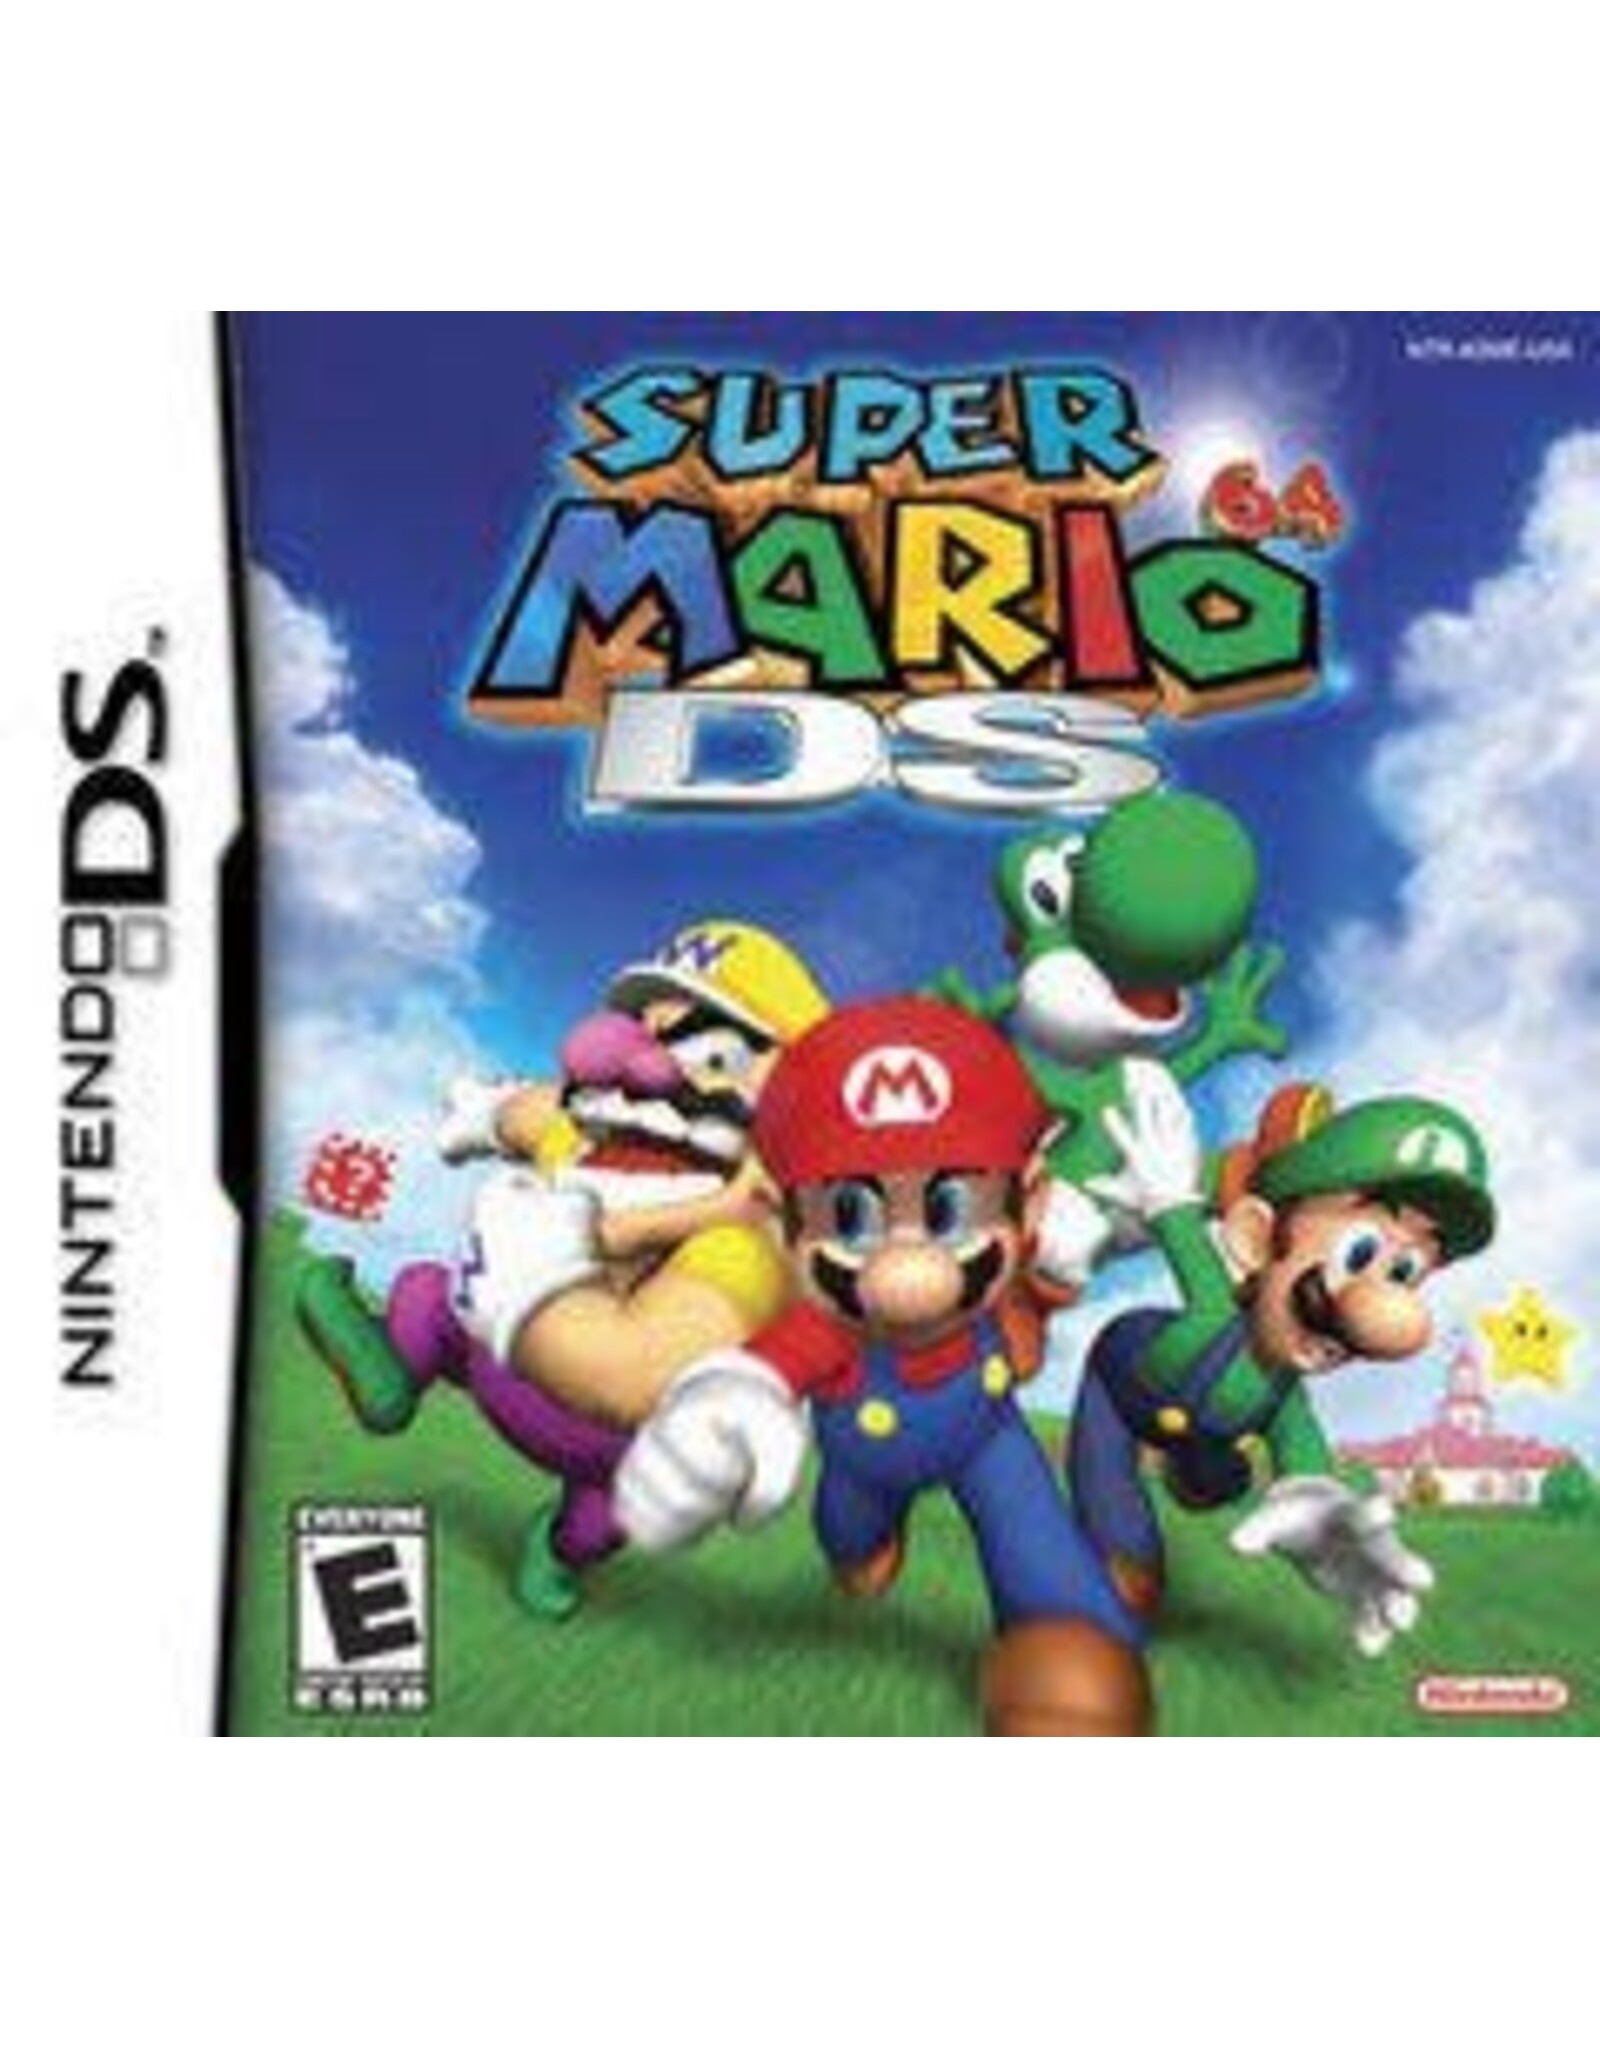 Nintendo DS Super Mario 64 DS (Used)